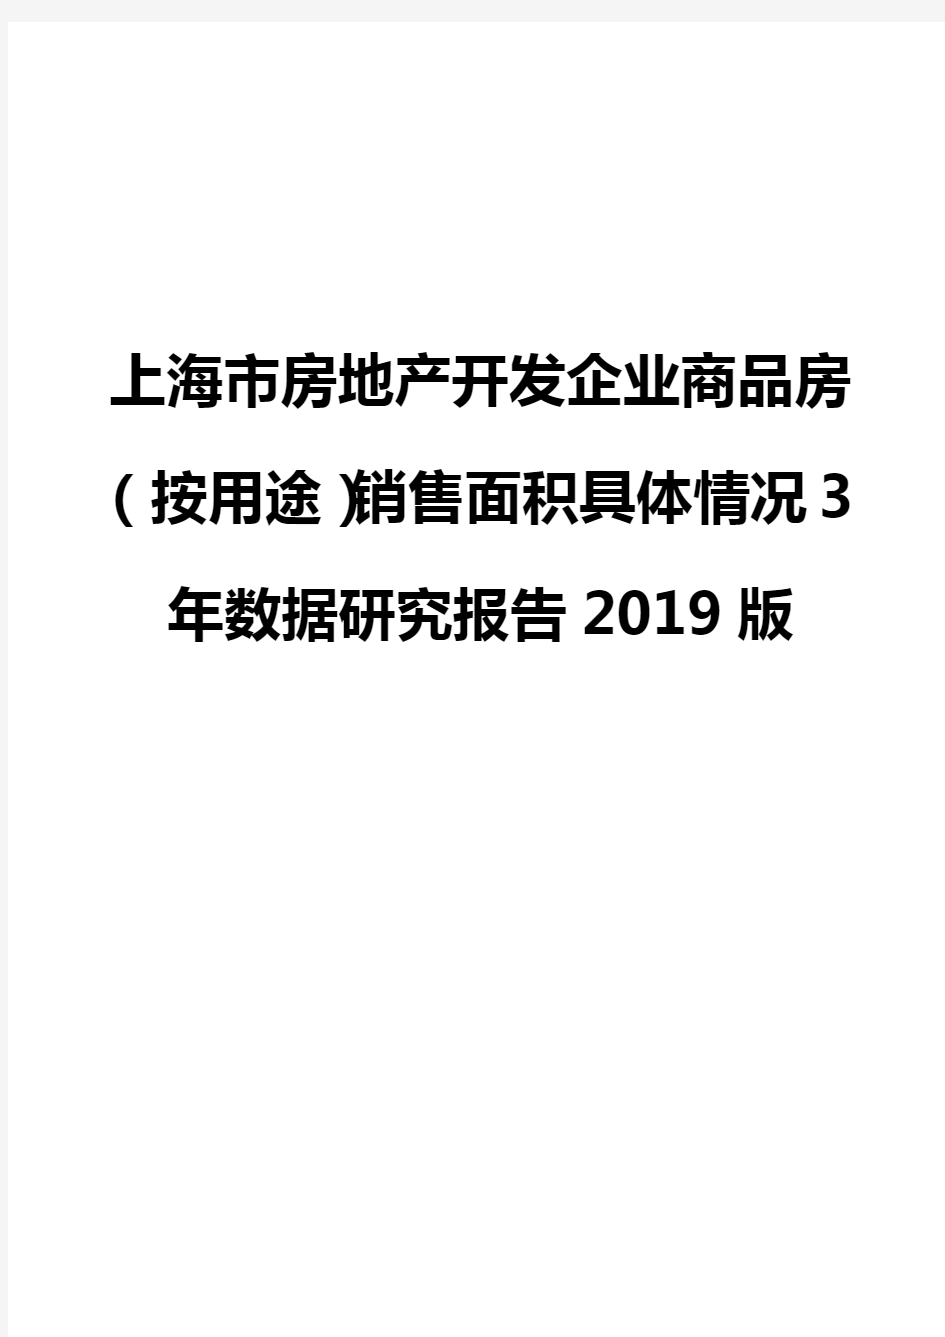 上海市房地产开发企业商品房(按用途)销售面积具体情况3年数据研究报告2019版